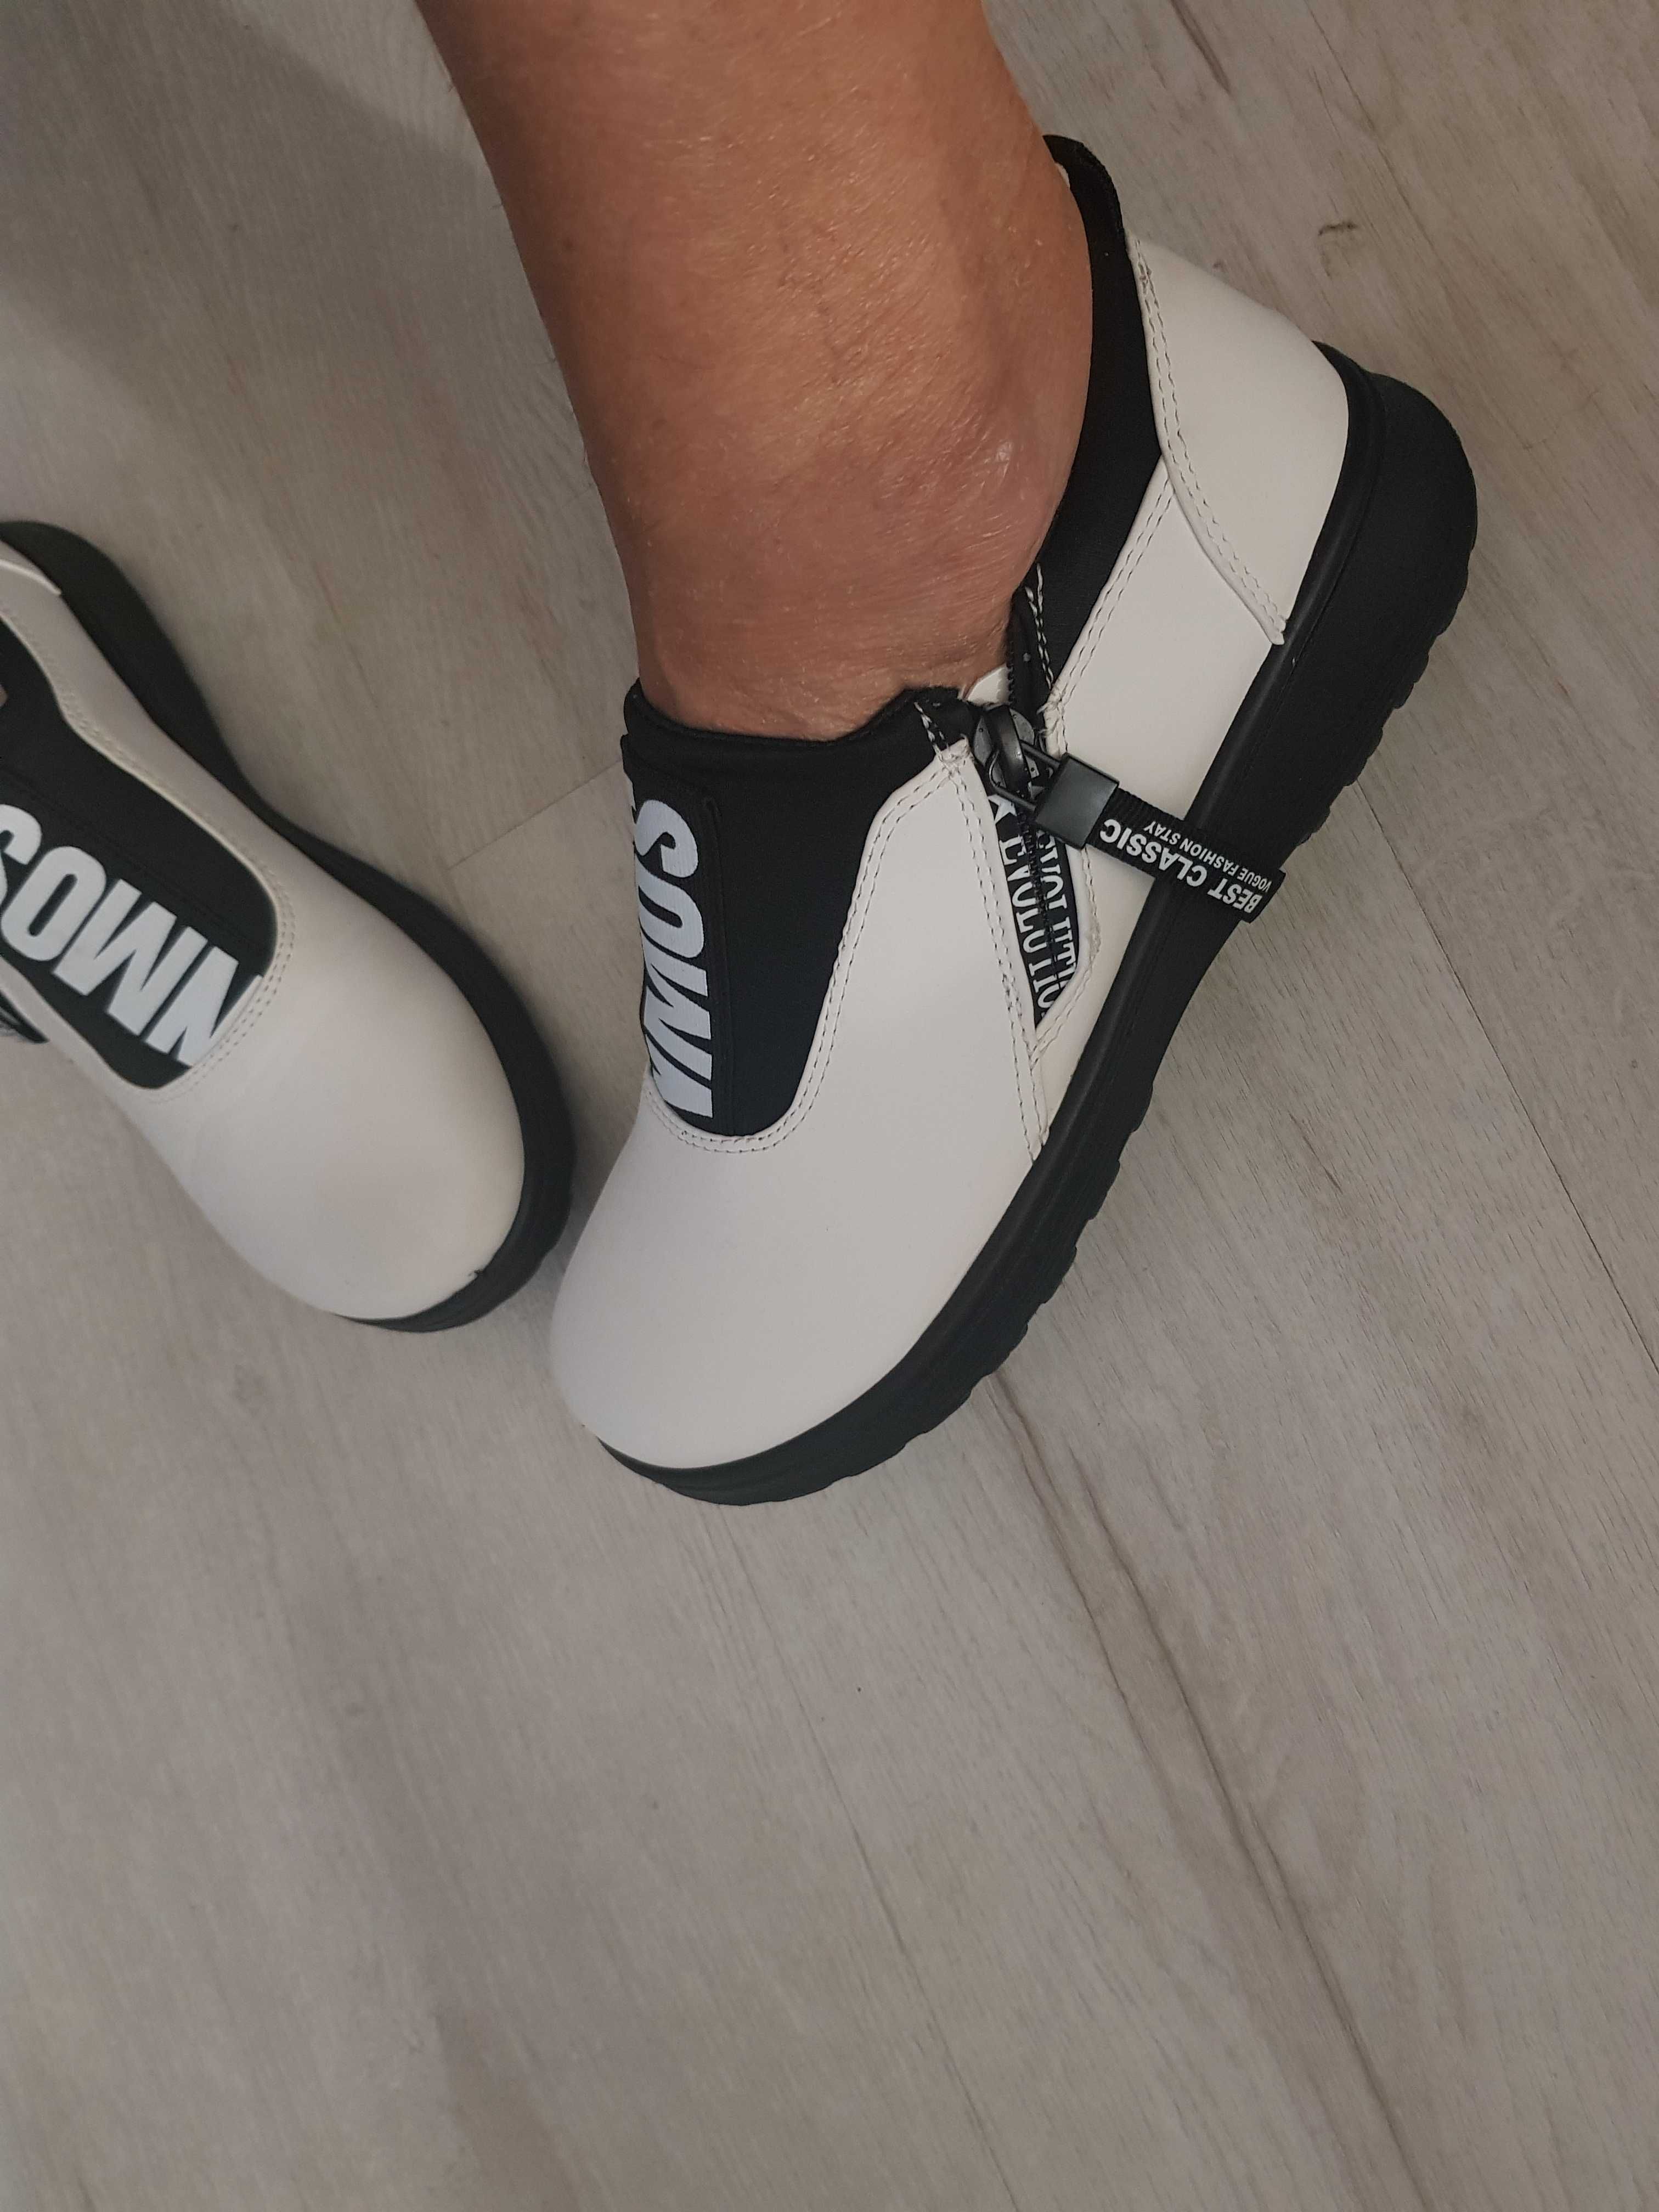 sliczne czarno-biale sneakersy adidasy 38  NOWE